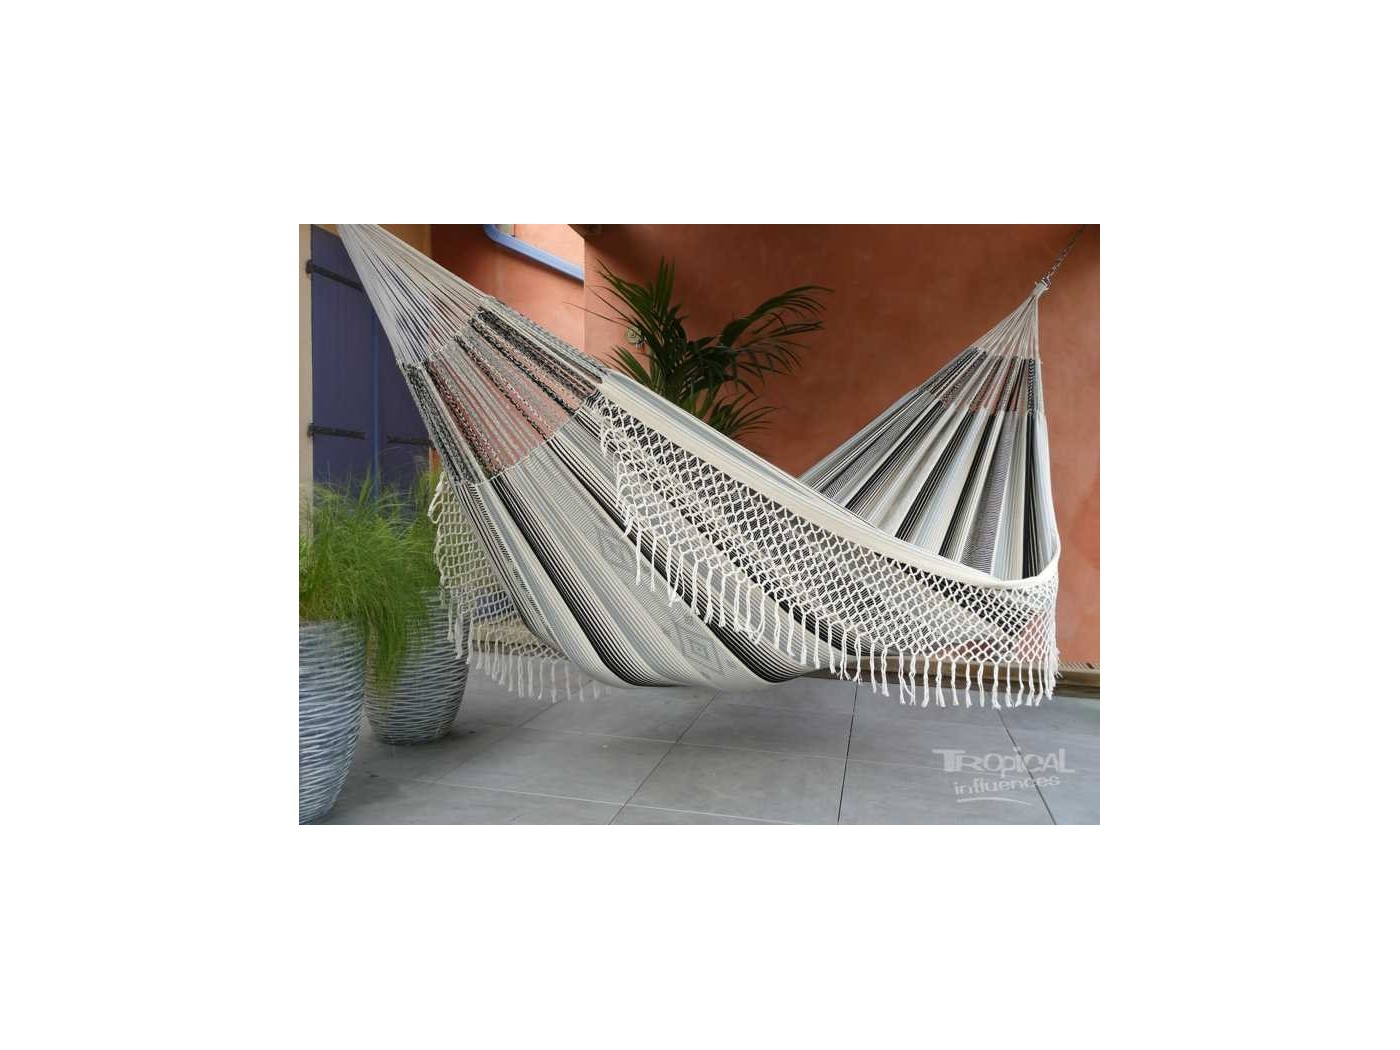 colombian hammock